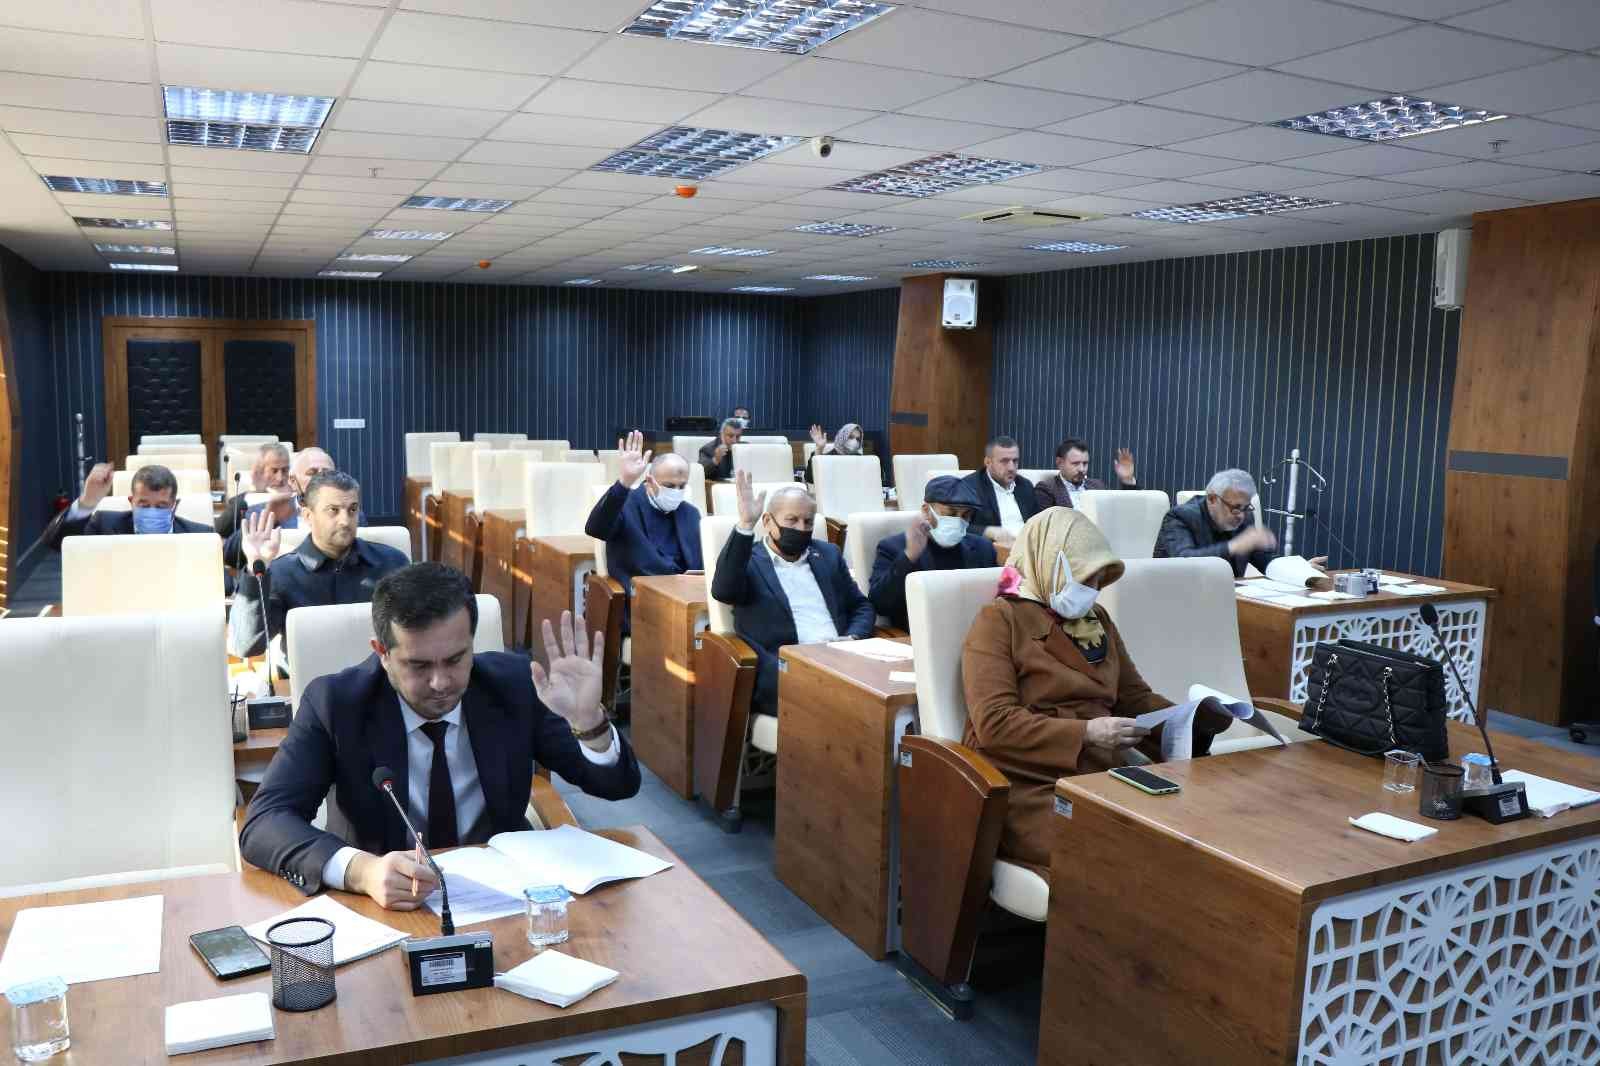 Tekkeköy Belediye Meclisi 2021’in son toplantısını yaptı